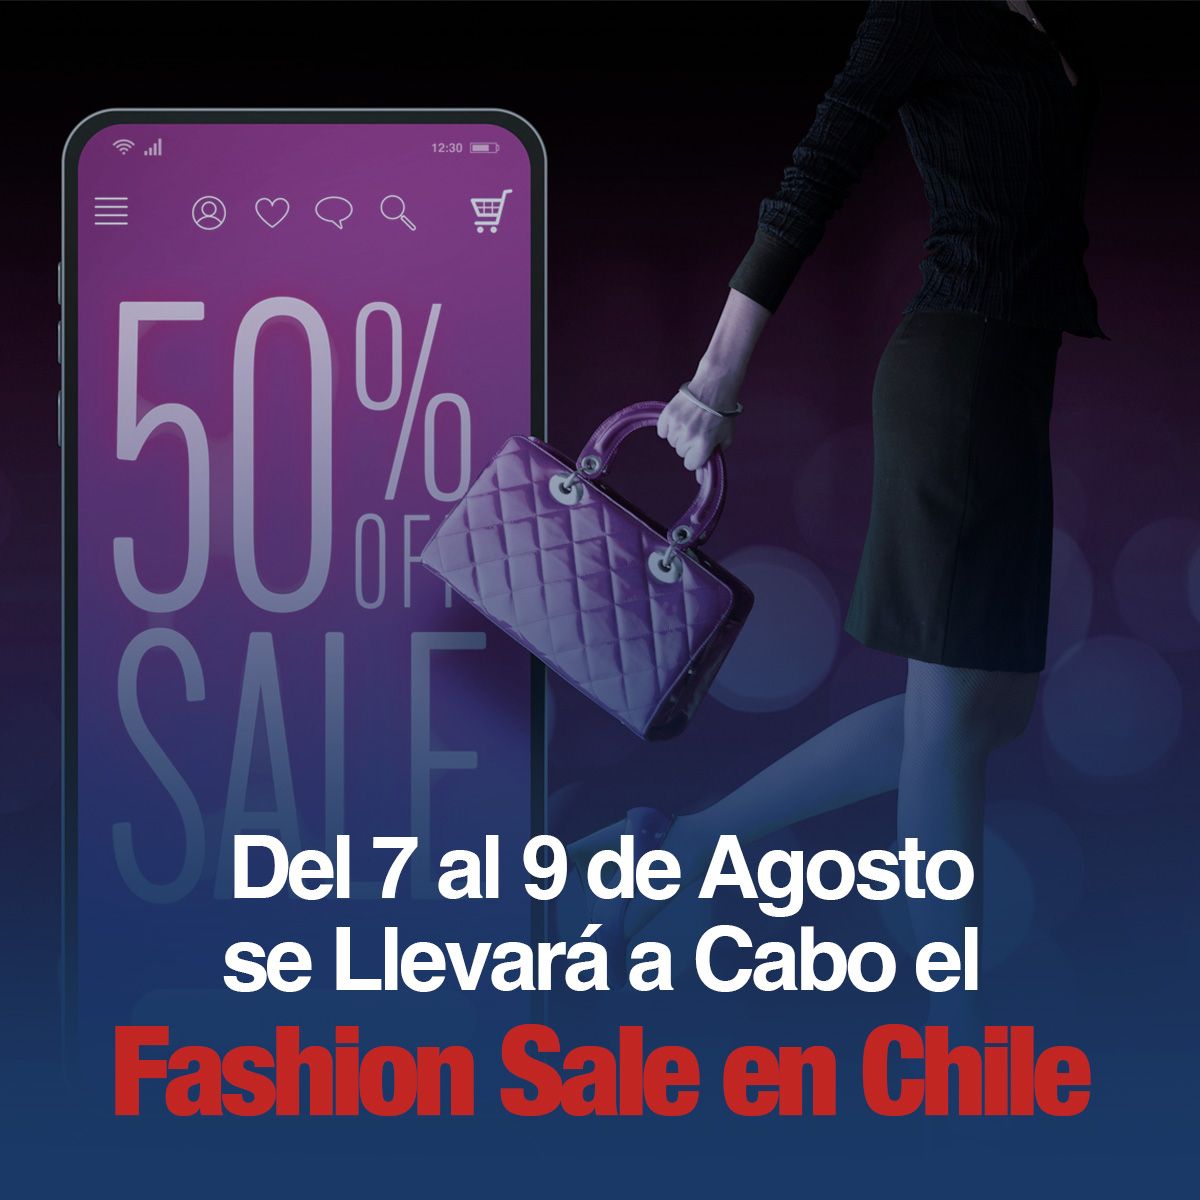 Del 7 al 9 de Agosto se Llevará a Cabo el Fashion Sale en Chile